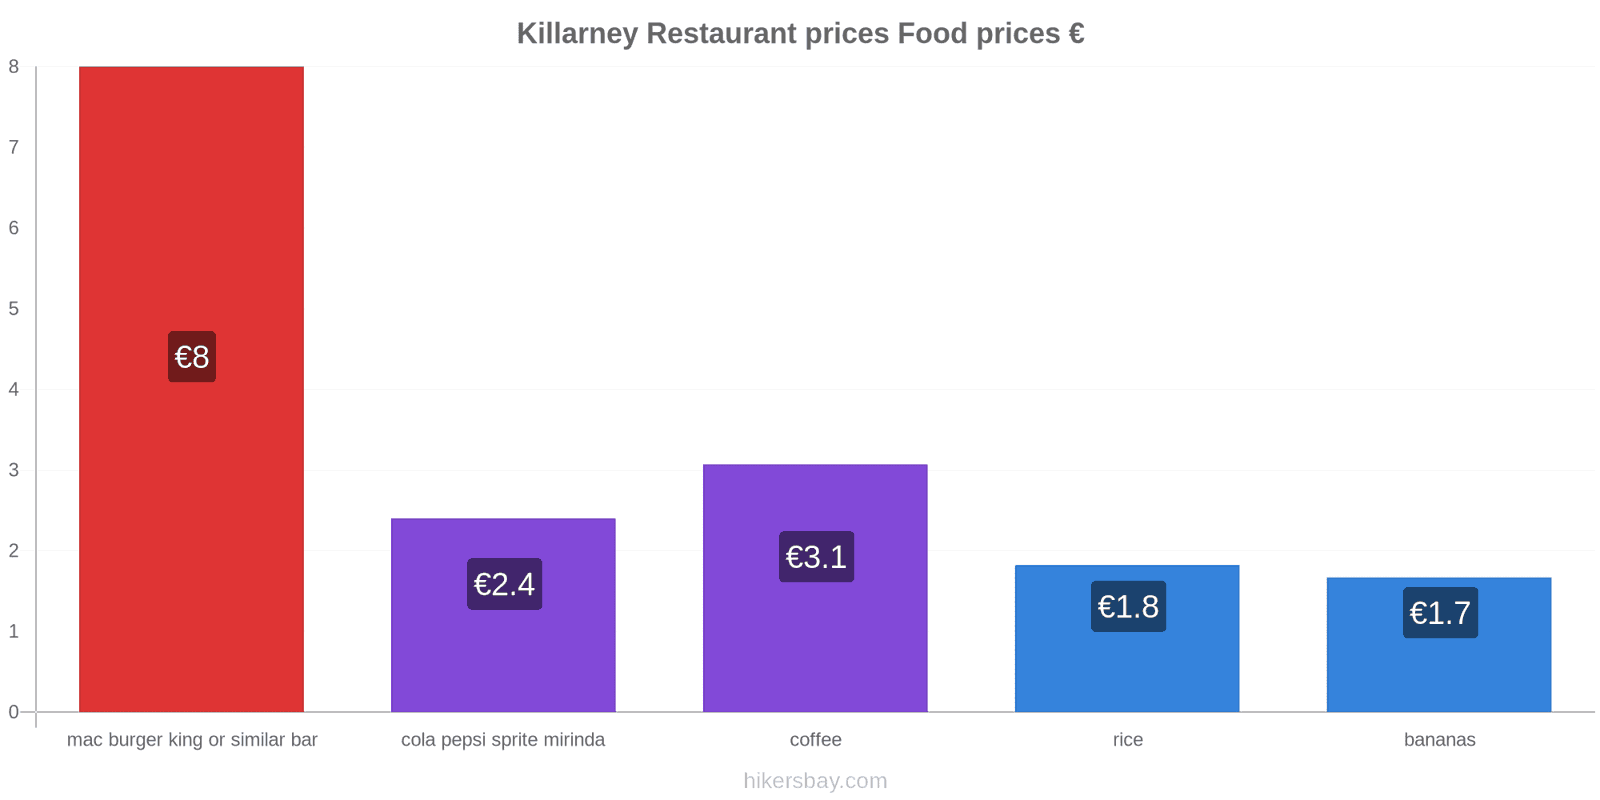 Killarney price changes hikersbay.com